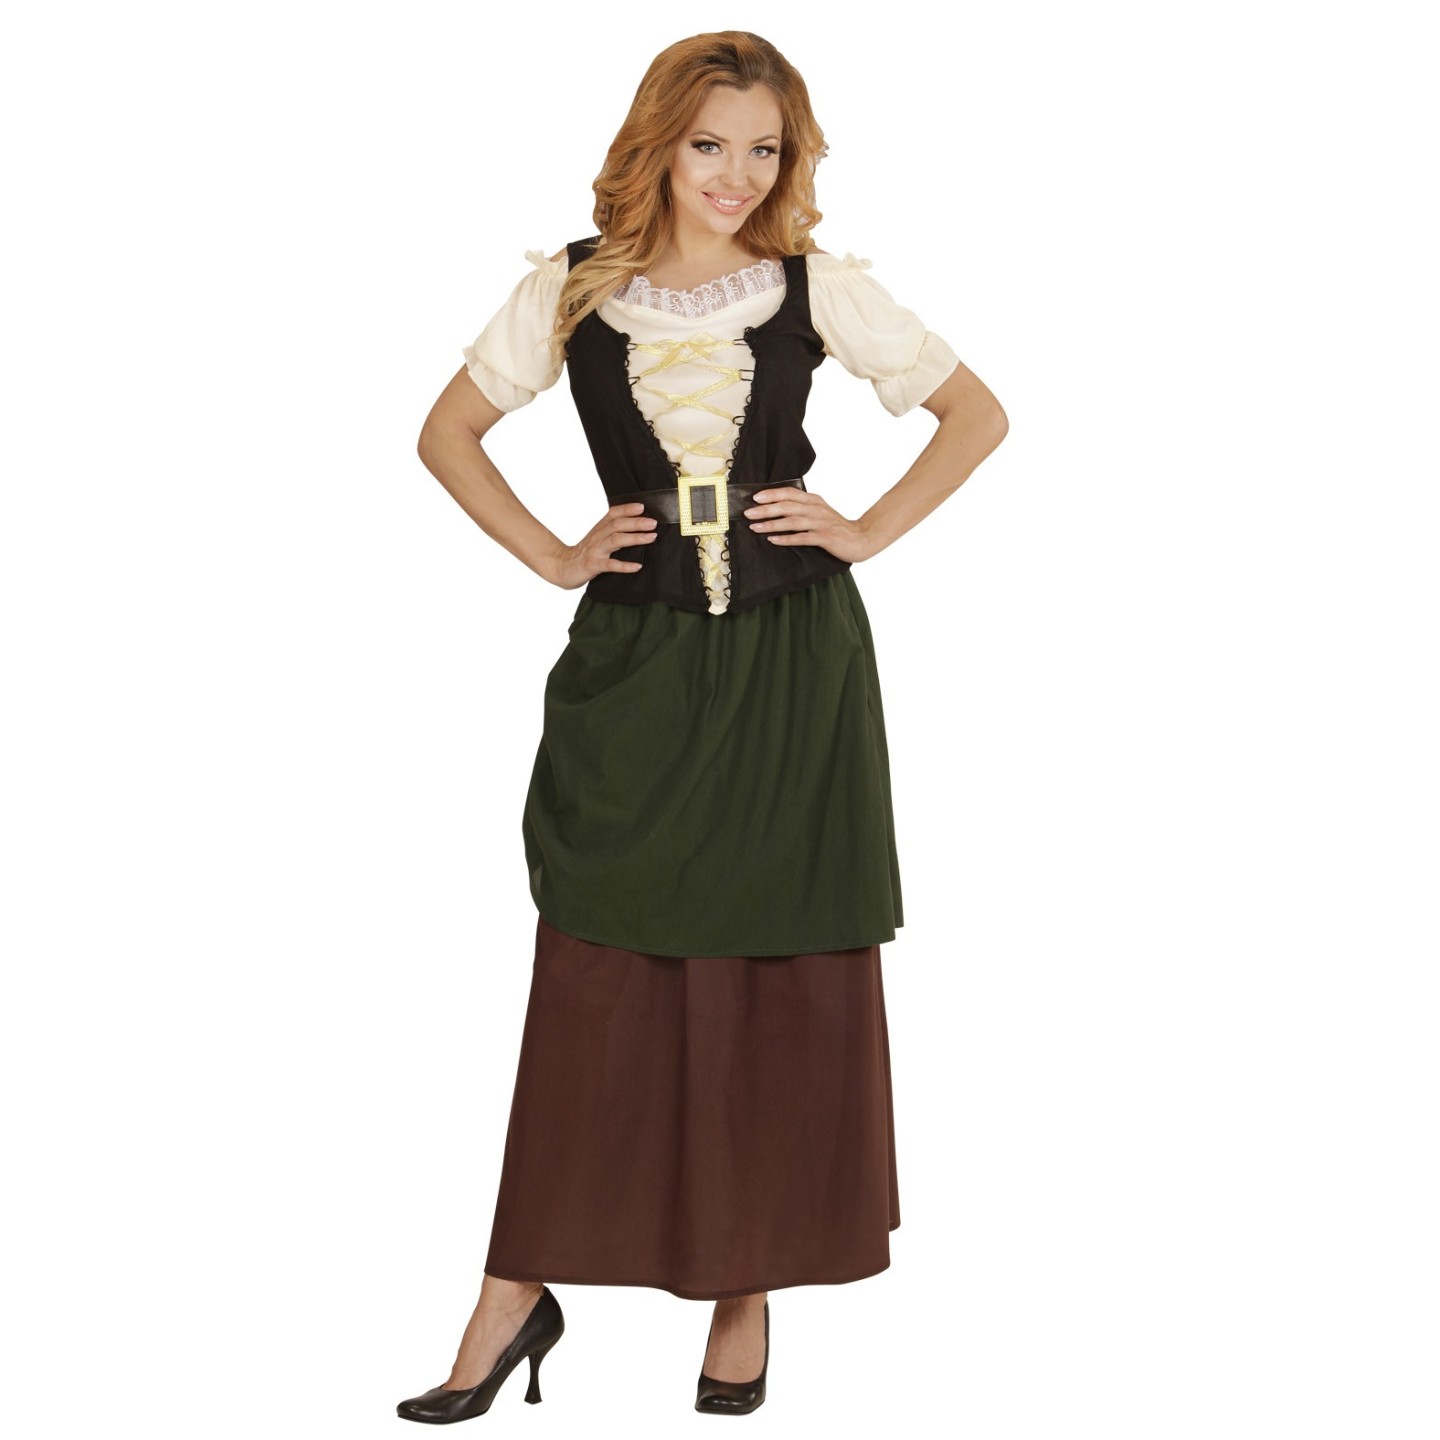 Genre Kruiden Hulpeloosheid Middeleeuws kostuum dames kopen ? | Jokershop.be - Breugel kleding